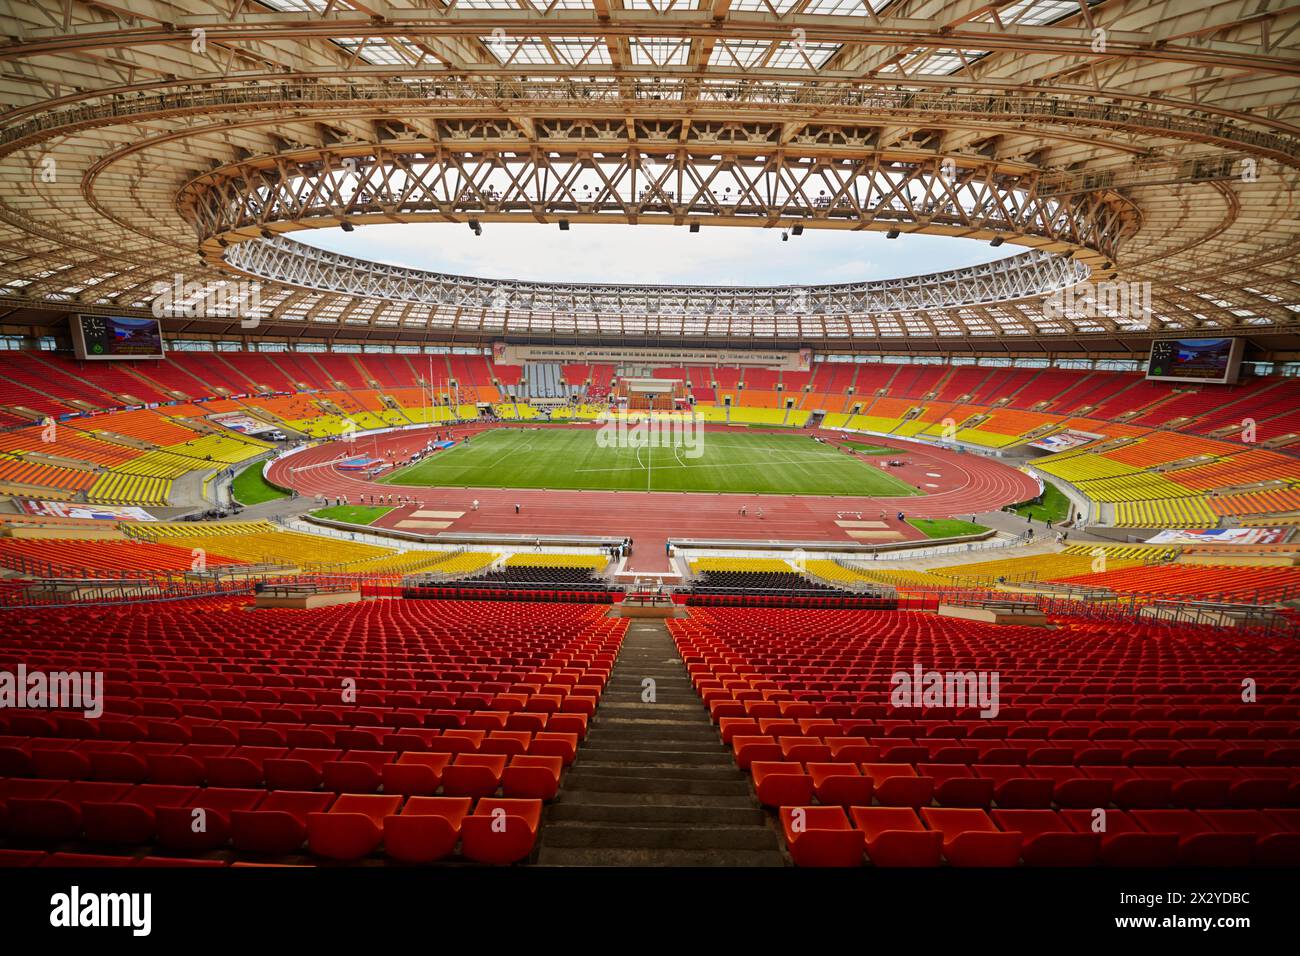 MOSKAU – 11. JUN: Grand Sports Arena des Olympischen Komplexes Luschniki während internationaler Leichtathletikwettbewerbe IAAF World Challenge Moskau Challenge, Jun Stockfoto